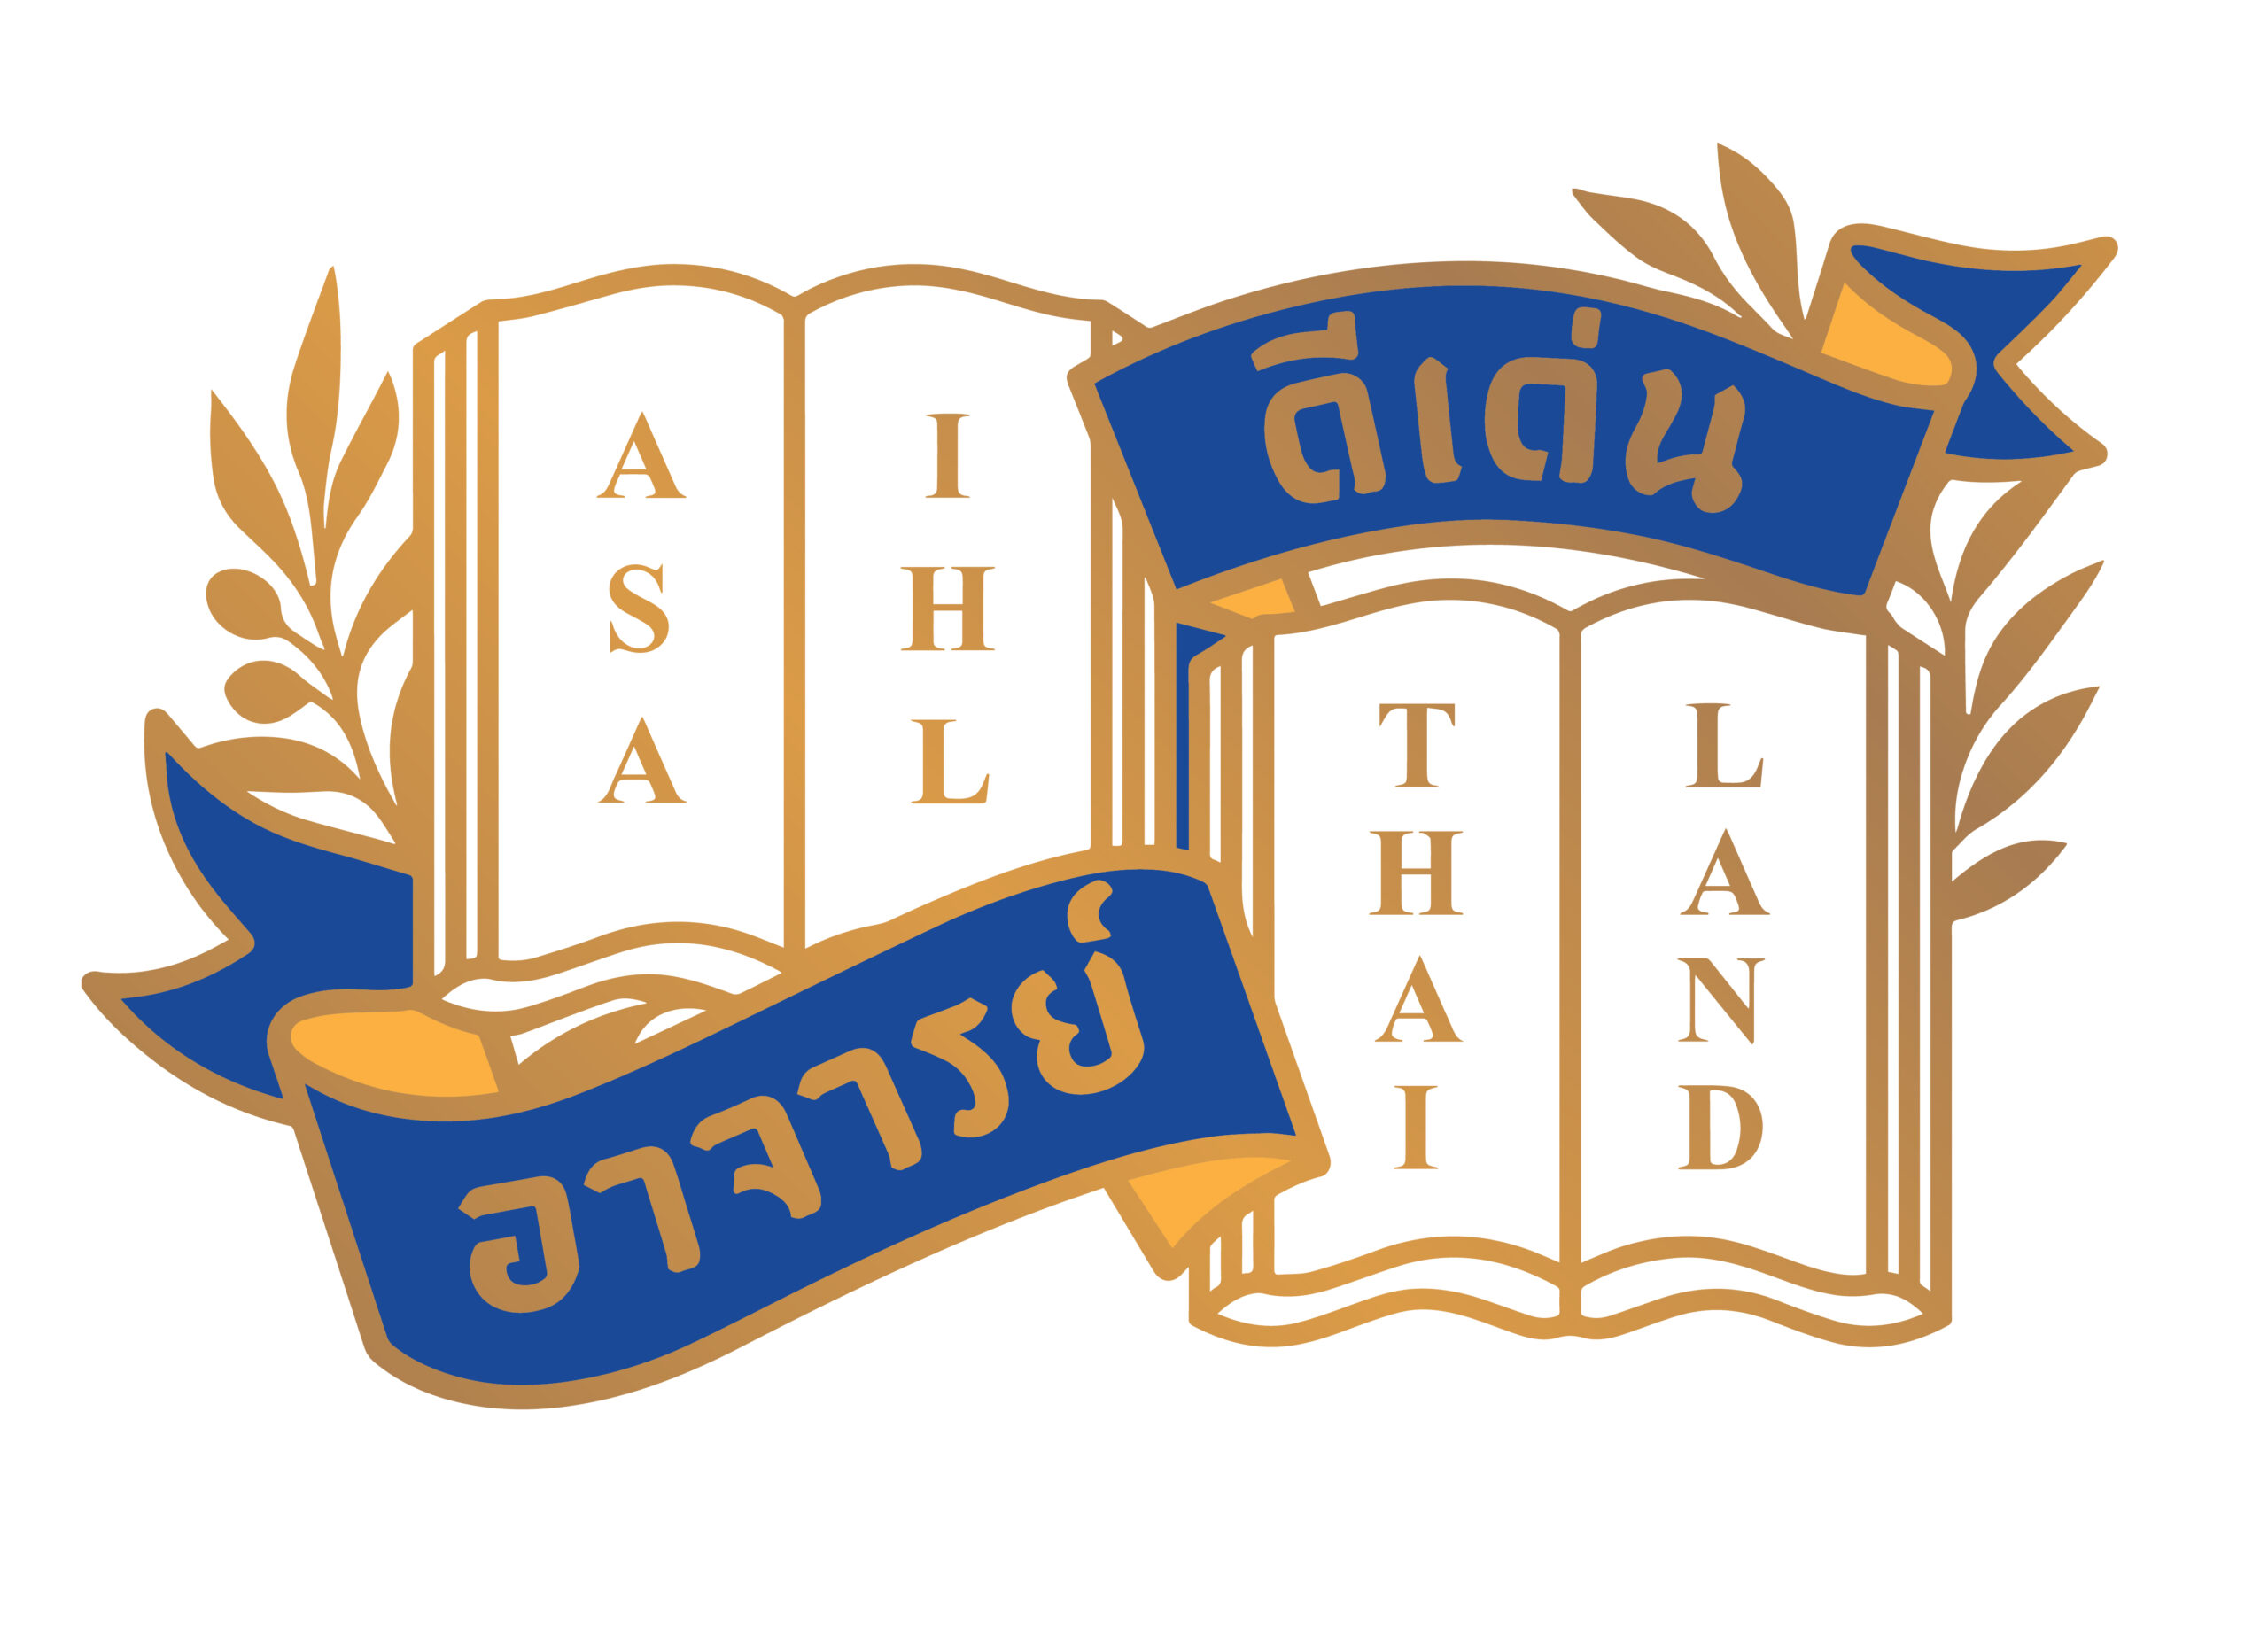 ประกาศรายชื่อผู้ที่ได้รับการคัดเลือกรางวัลเกียรติยศแห่งความสำเร็จ สออ.ประเทศไทย ประจำปี 2566 (ASAIHL Thailand Outstanding Achievement Award 2023)